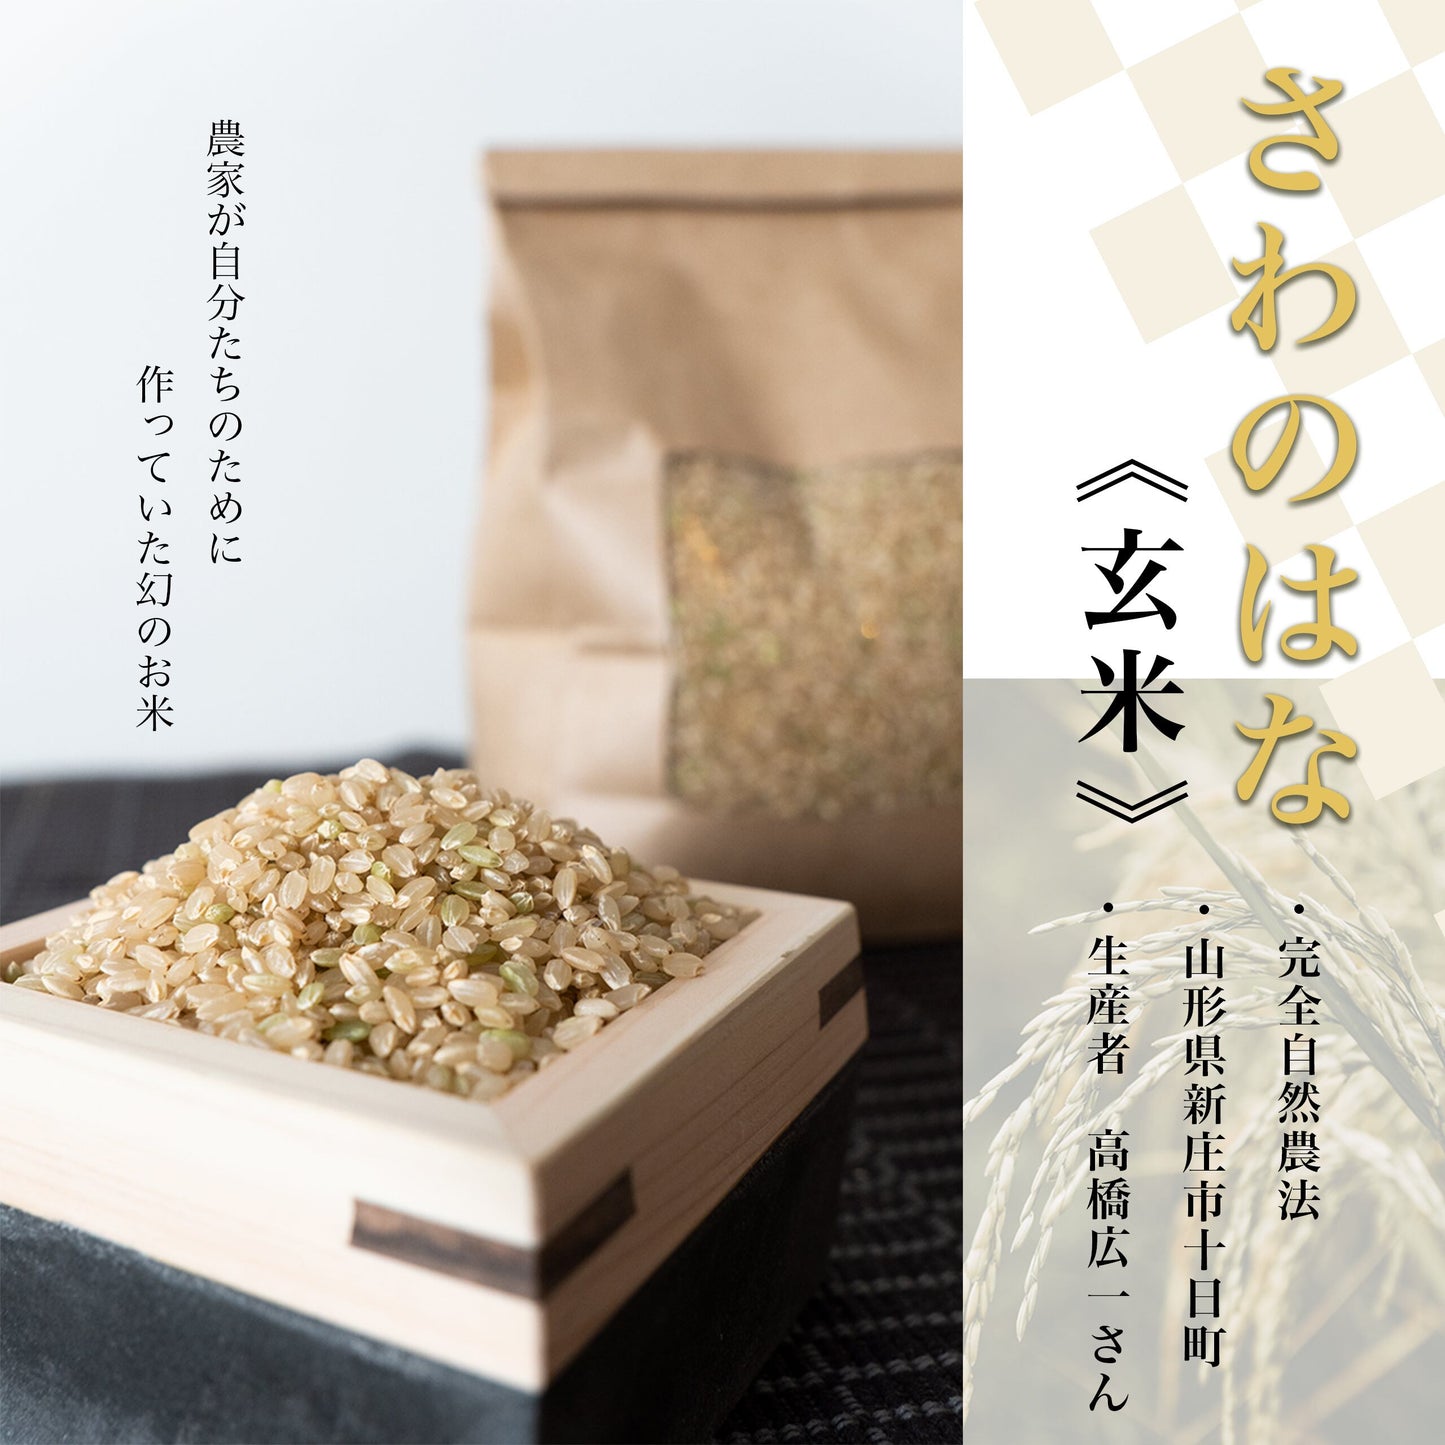 Sawa-no-Hana (Brown rice)